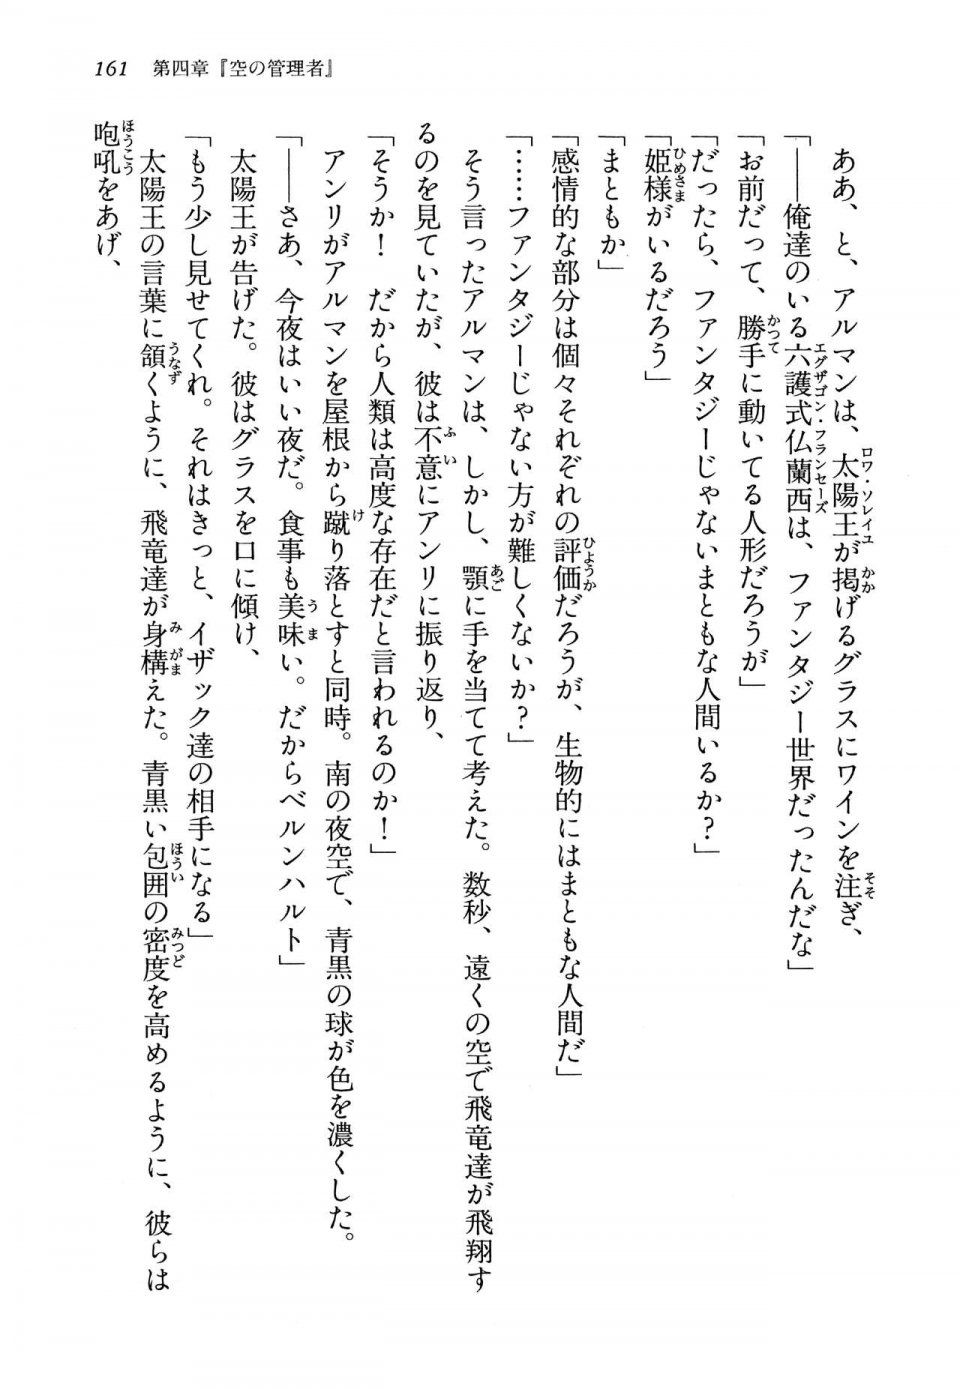 Kyoukai Senjou no Horizon LN Vol 13(6A) - Photo #161